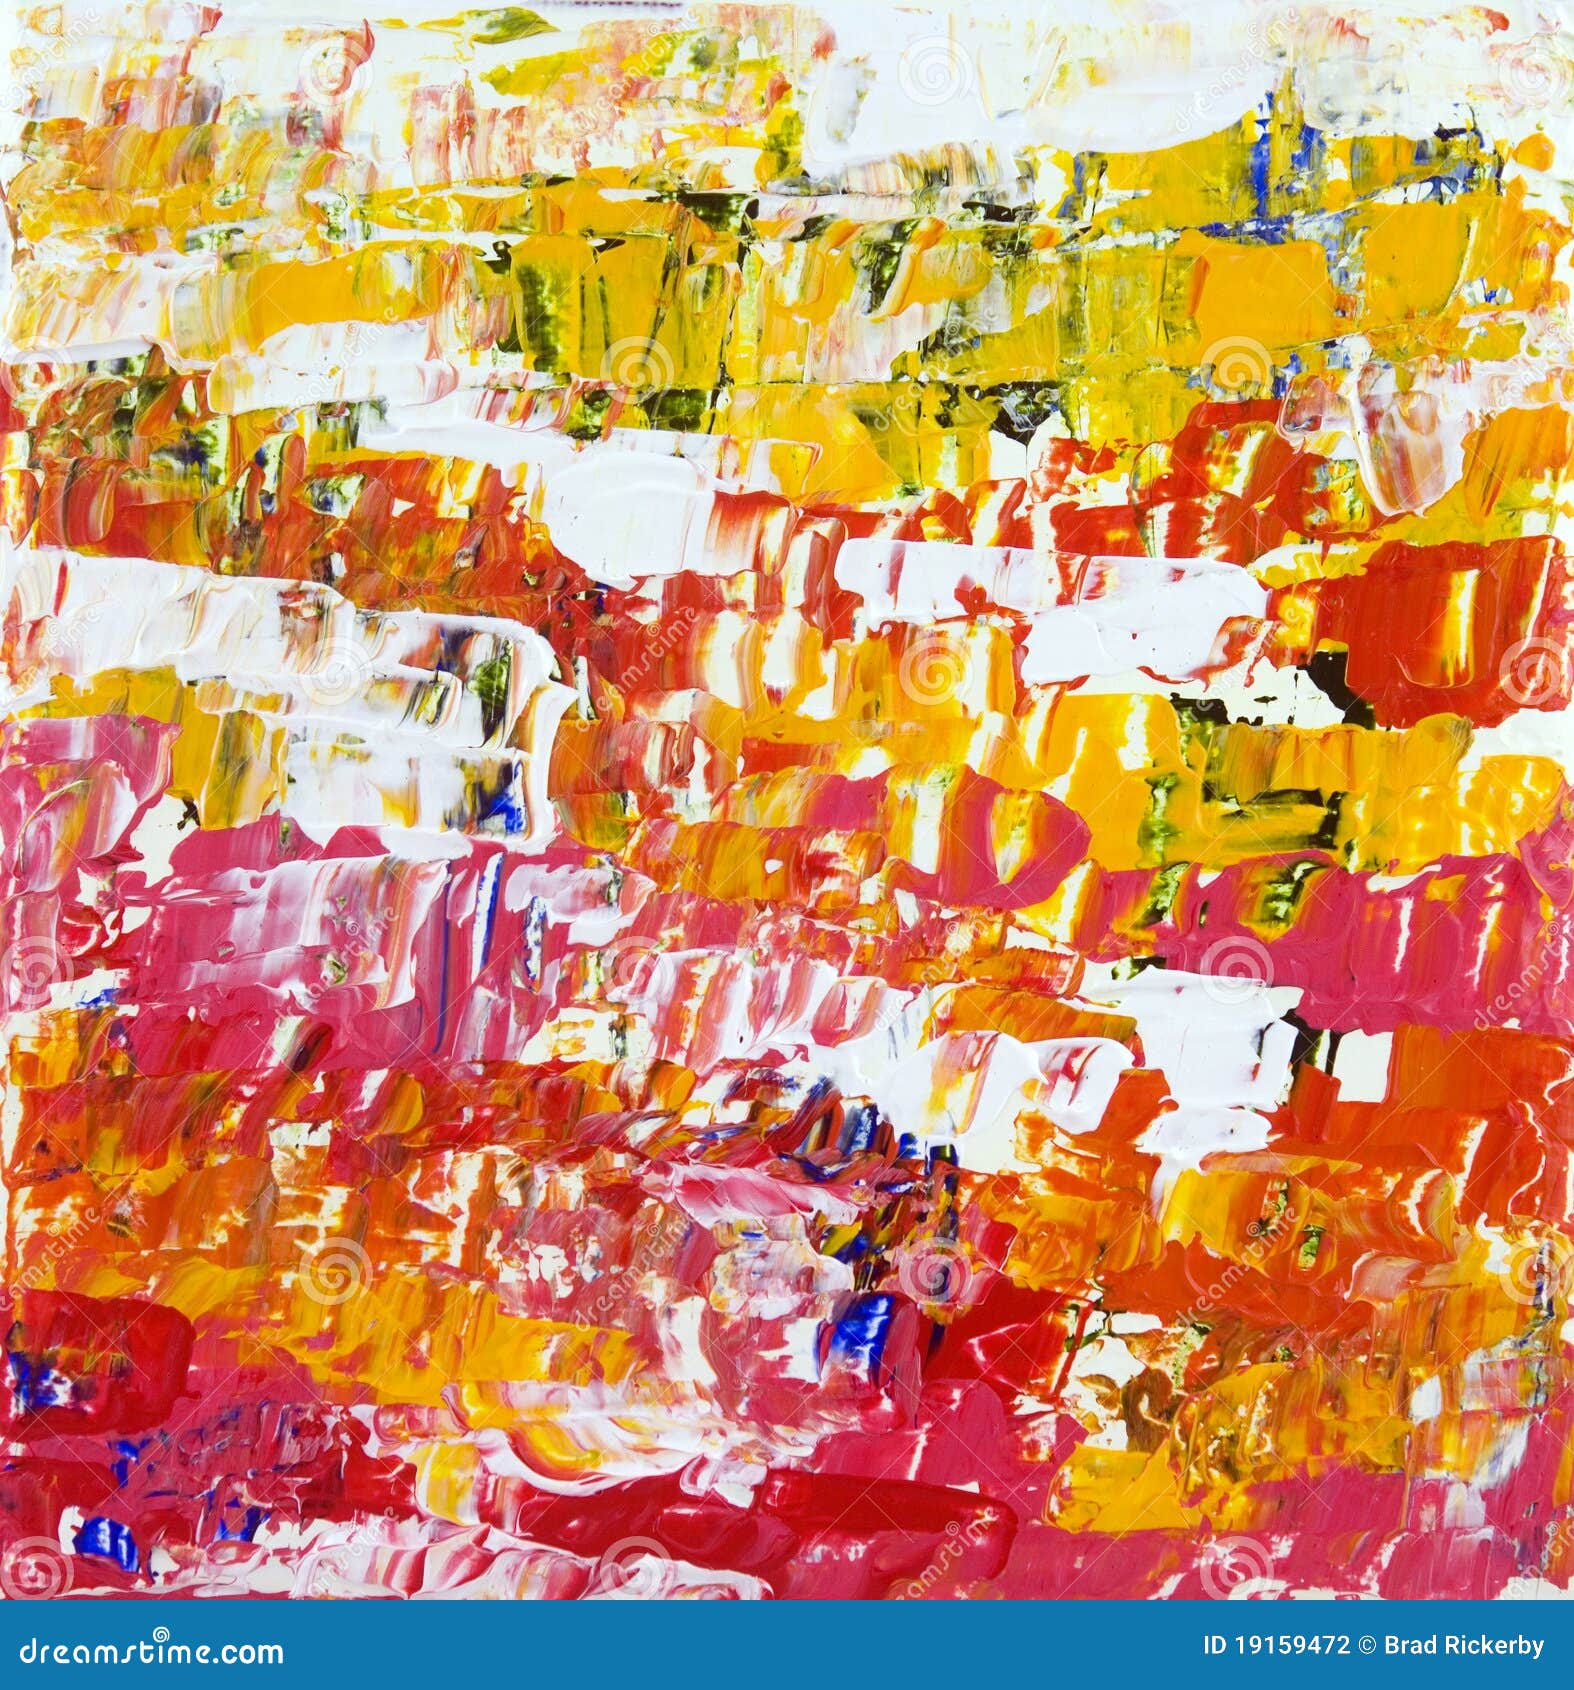 λαμπρότητα. αφηρημένος ακρυλικός ανασκόπησης χρώματος τοίχος συστάσεων αφθονίας εγγράφου ζωγραφικής expressionist μεγάλος